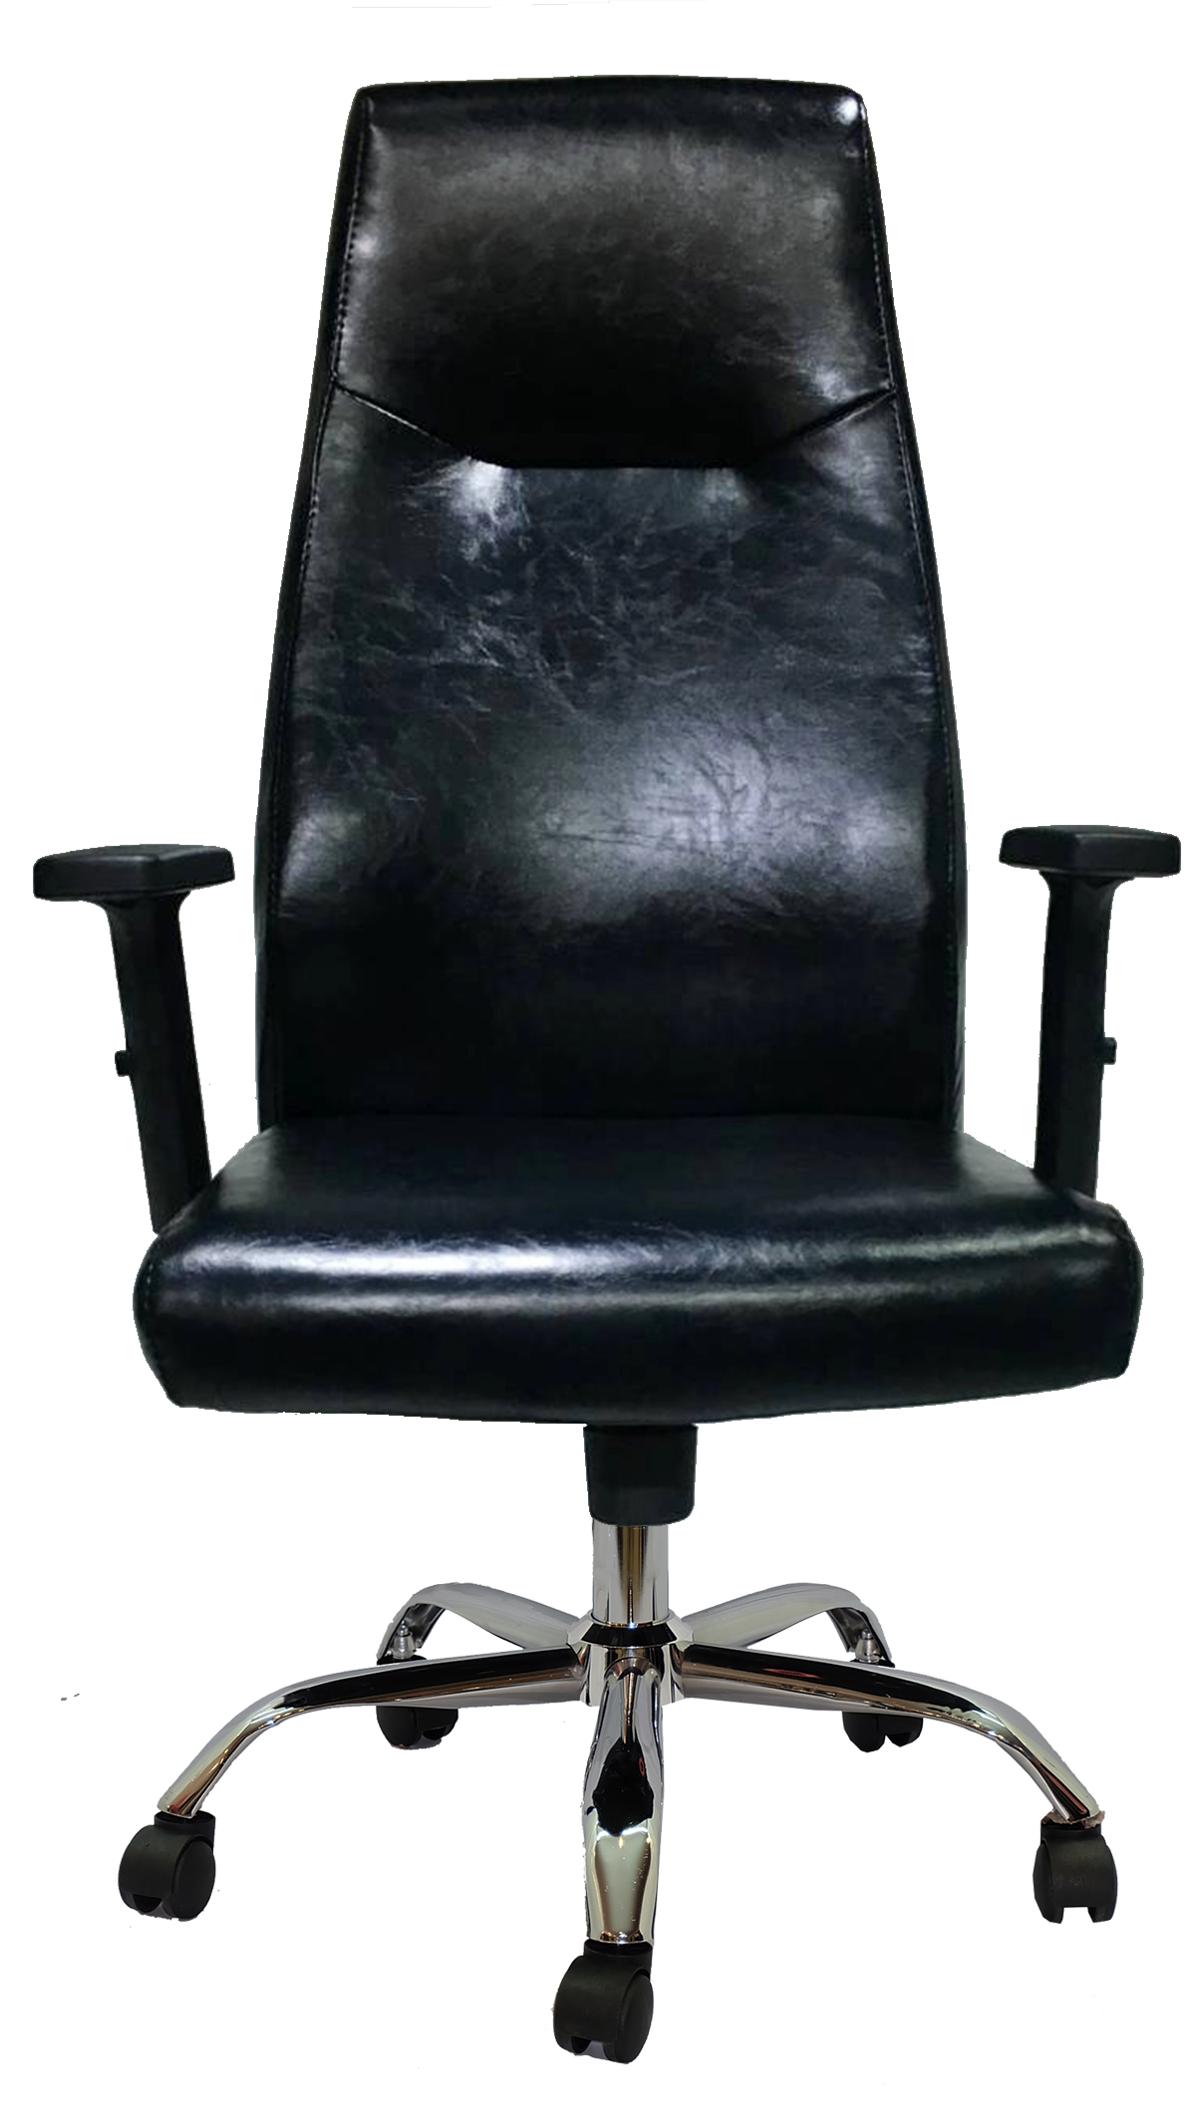 เก้าอี้ผู้บริหาร รุ่น PK9700